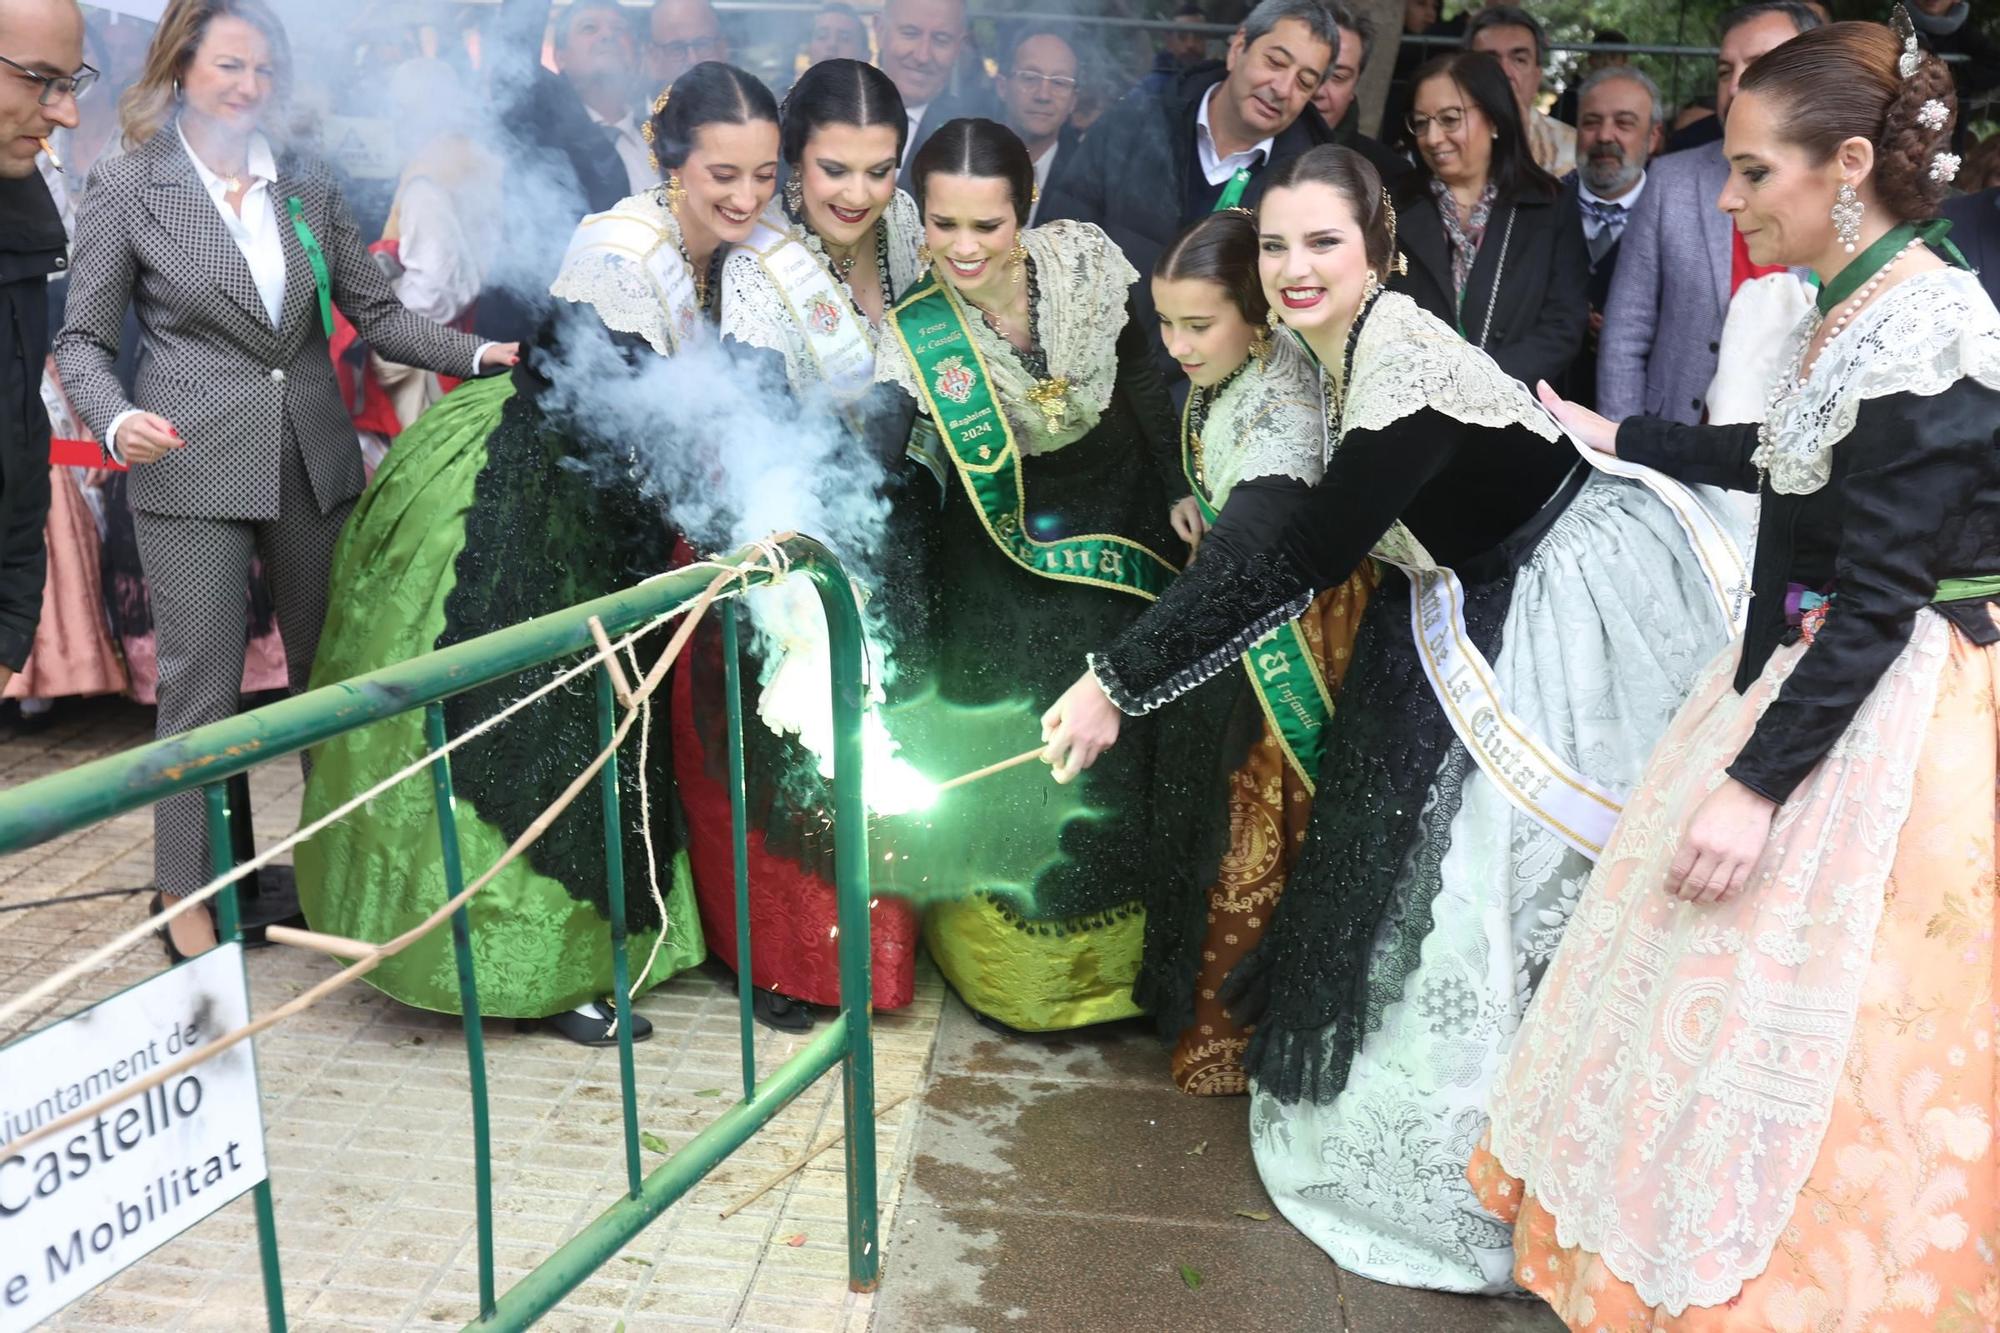 Las reinas de la Magdalena en el momento del encendido de la mascletà de hoy, con Barreda y Massó de invitados de excepción.